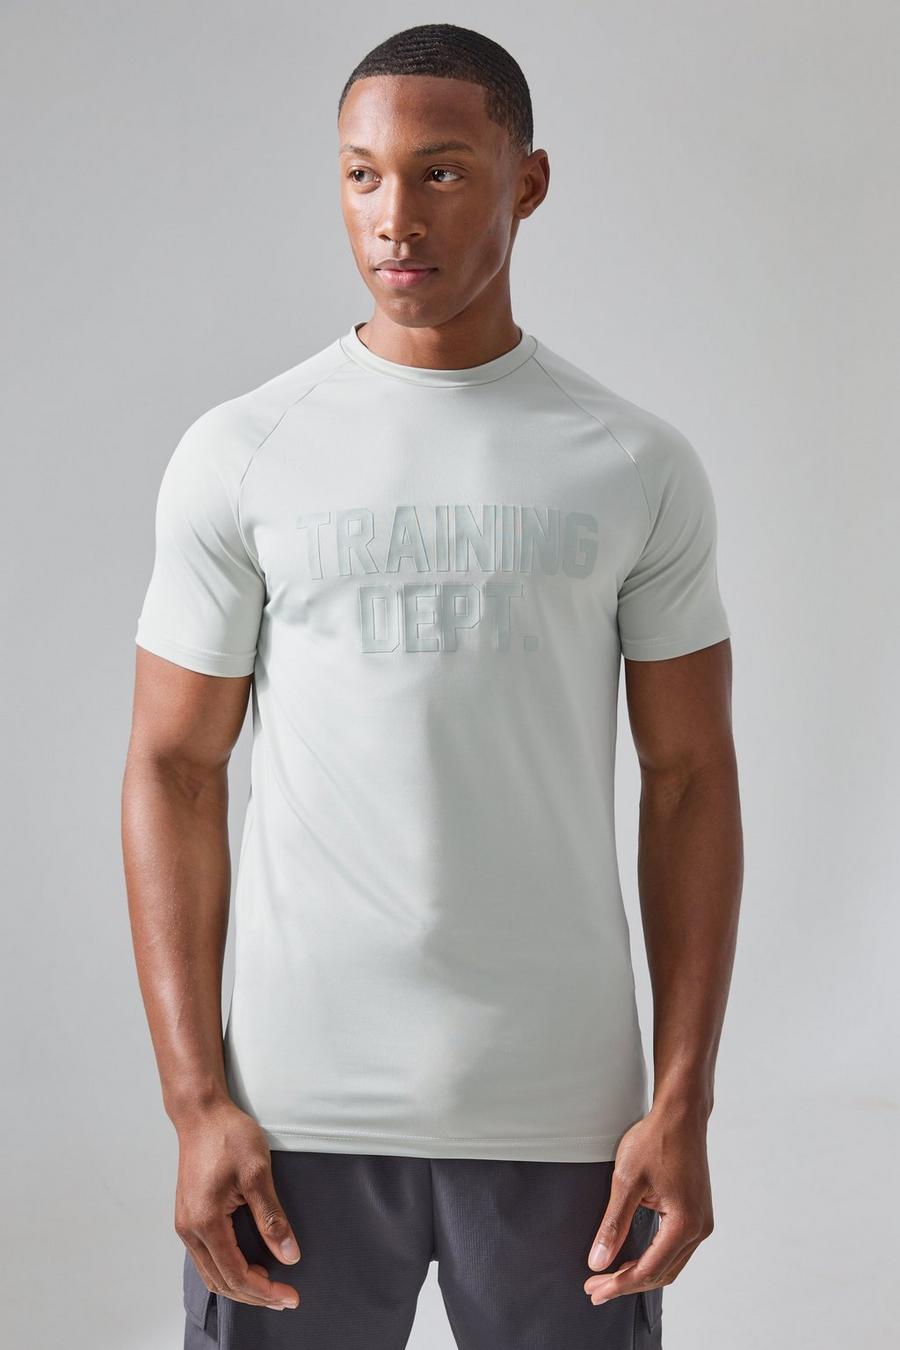 Camiseta Active ajustada al músculo con estampado Training Dept, Stone